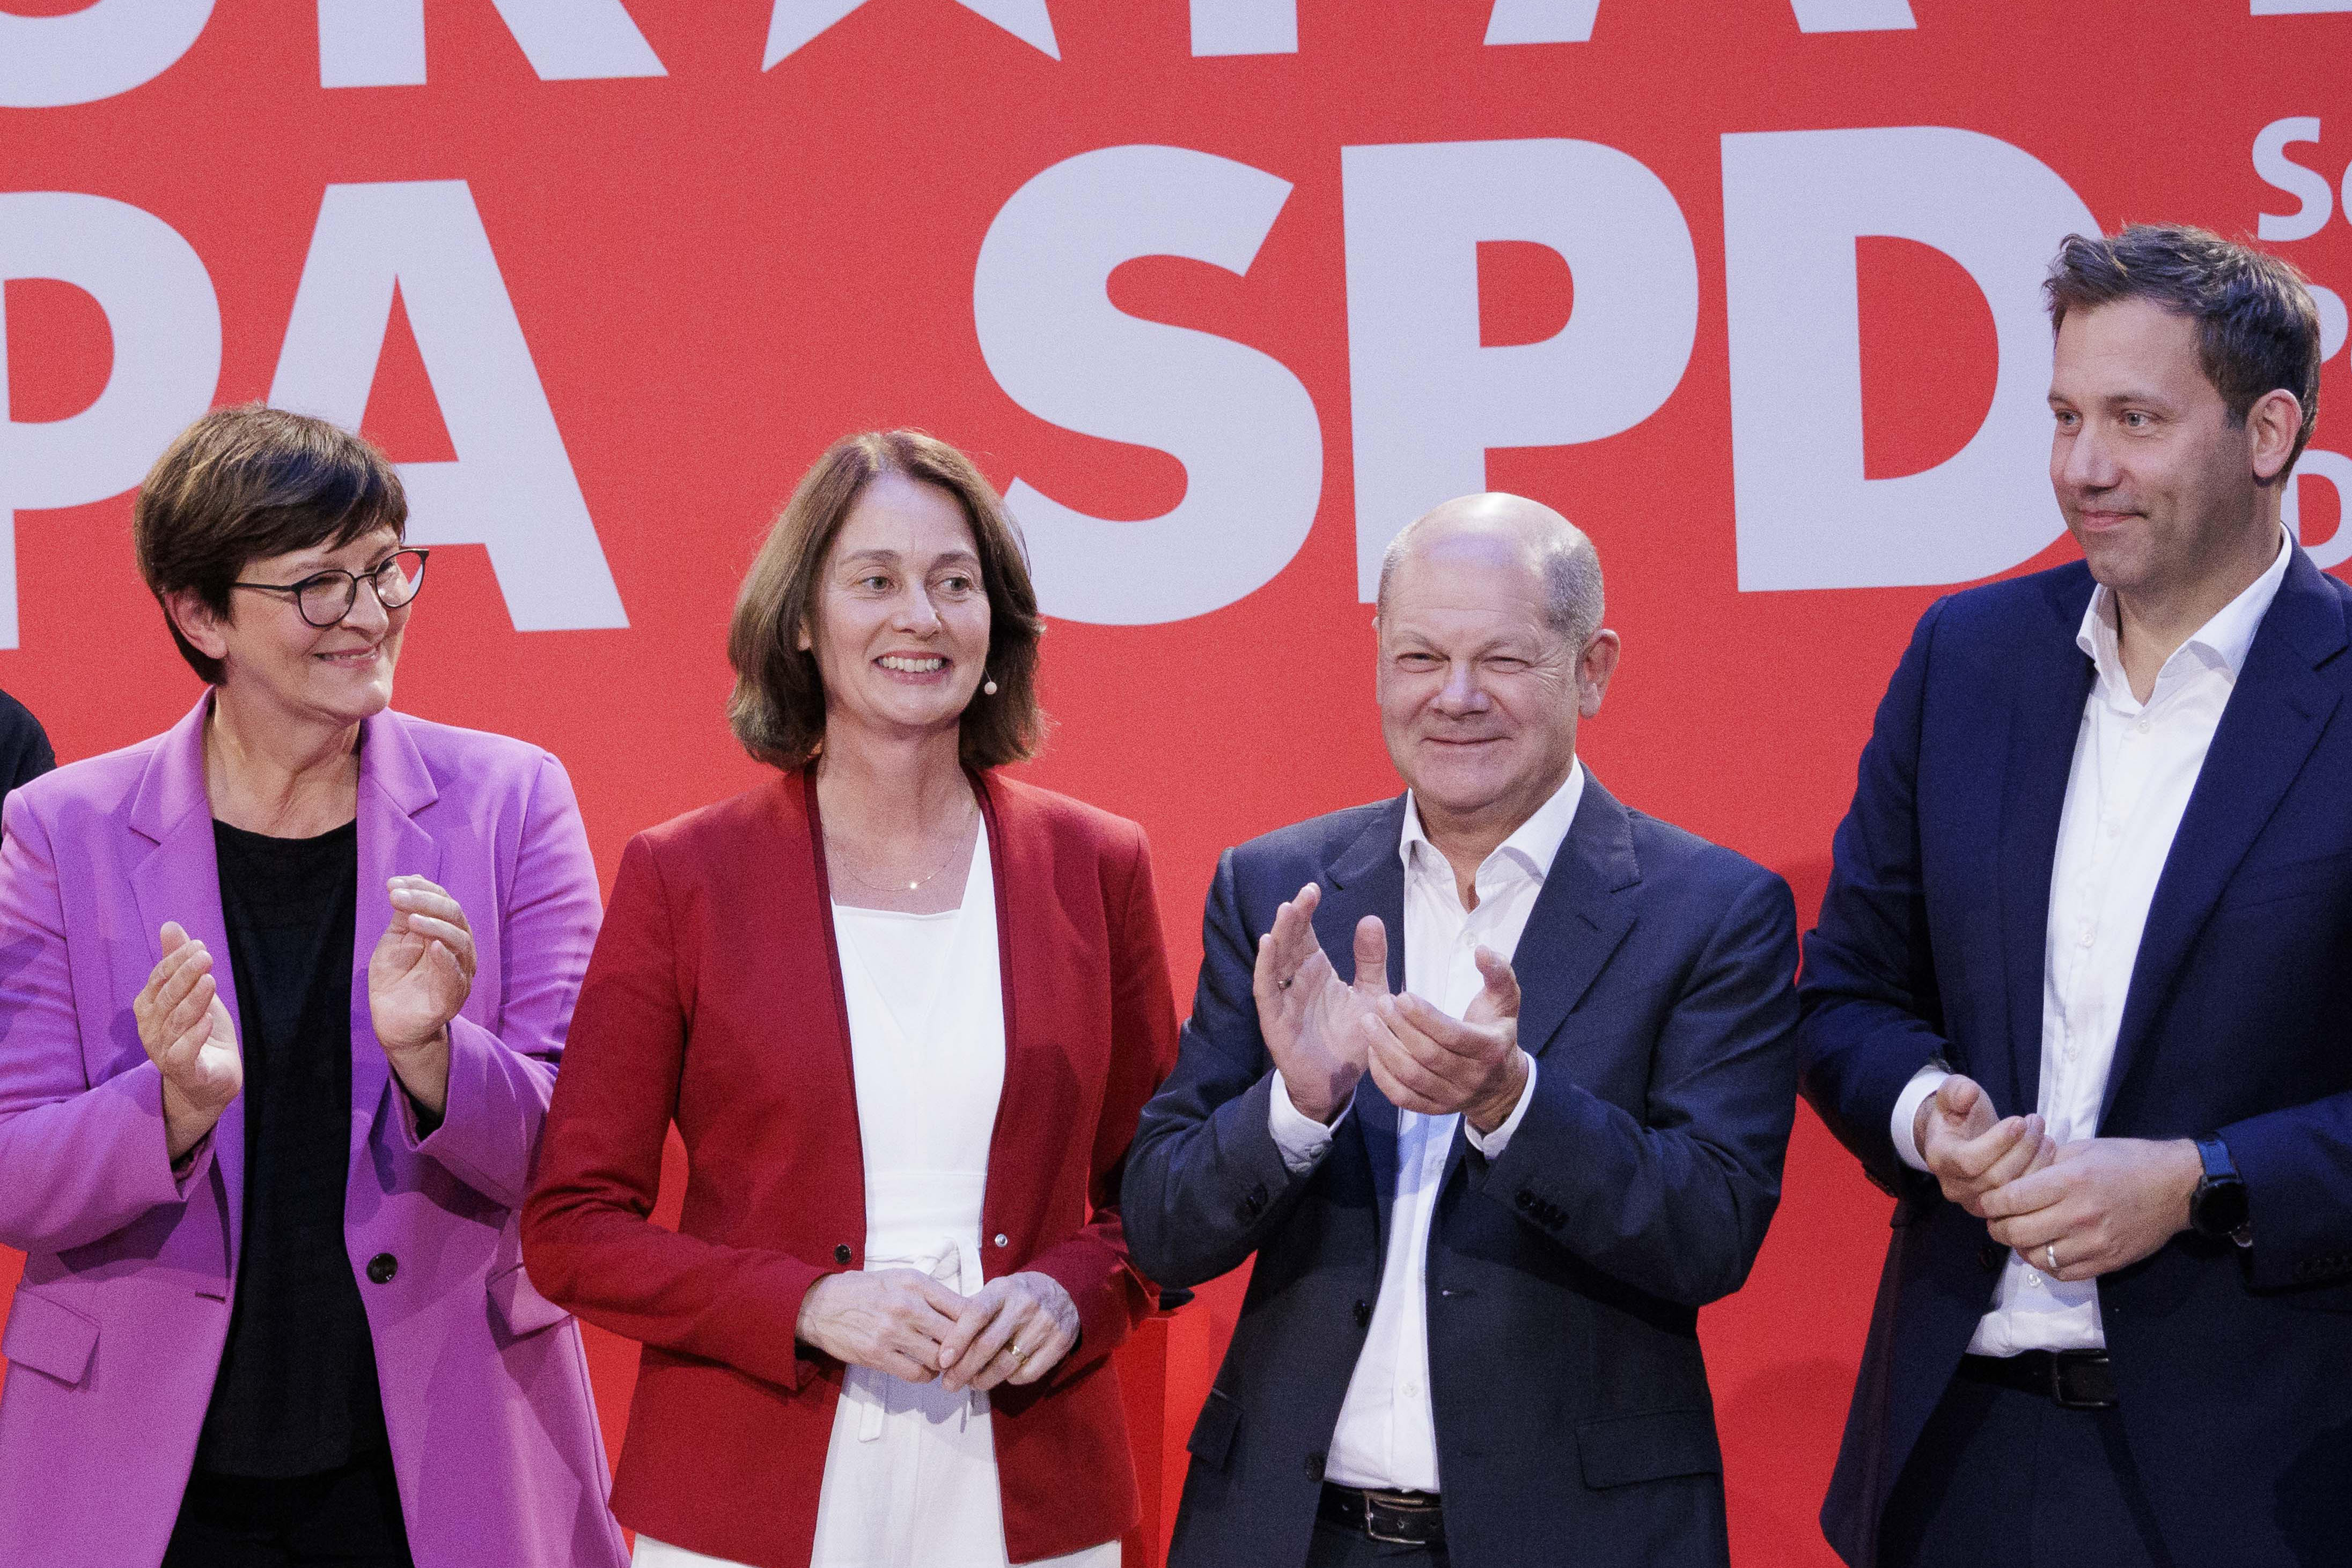 Bereit für die Europawahl: SPD-Spitzenkandidatin Katarina Barley mit den Parteivorsitzenden Lars Klingbeil und Saskia Esken sowie Bundeskanzler Olaf Scholz.